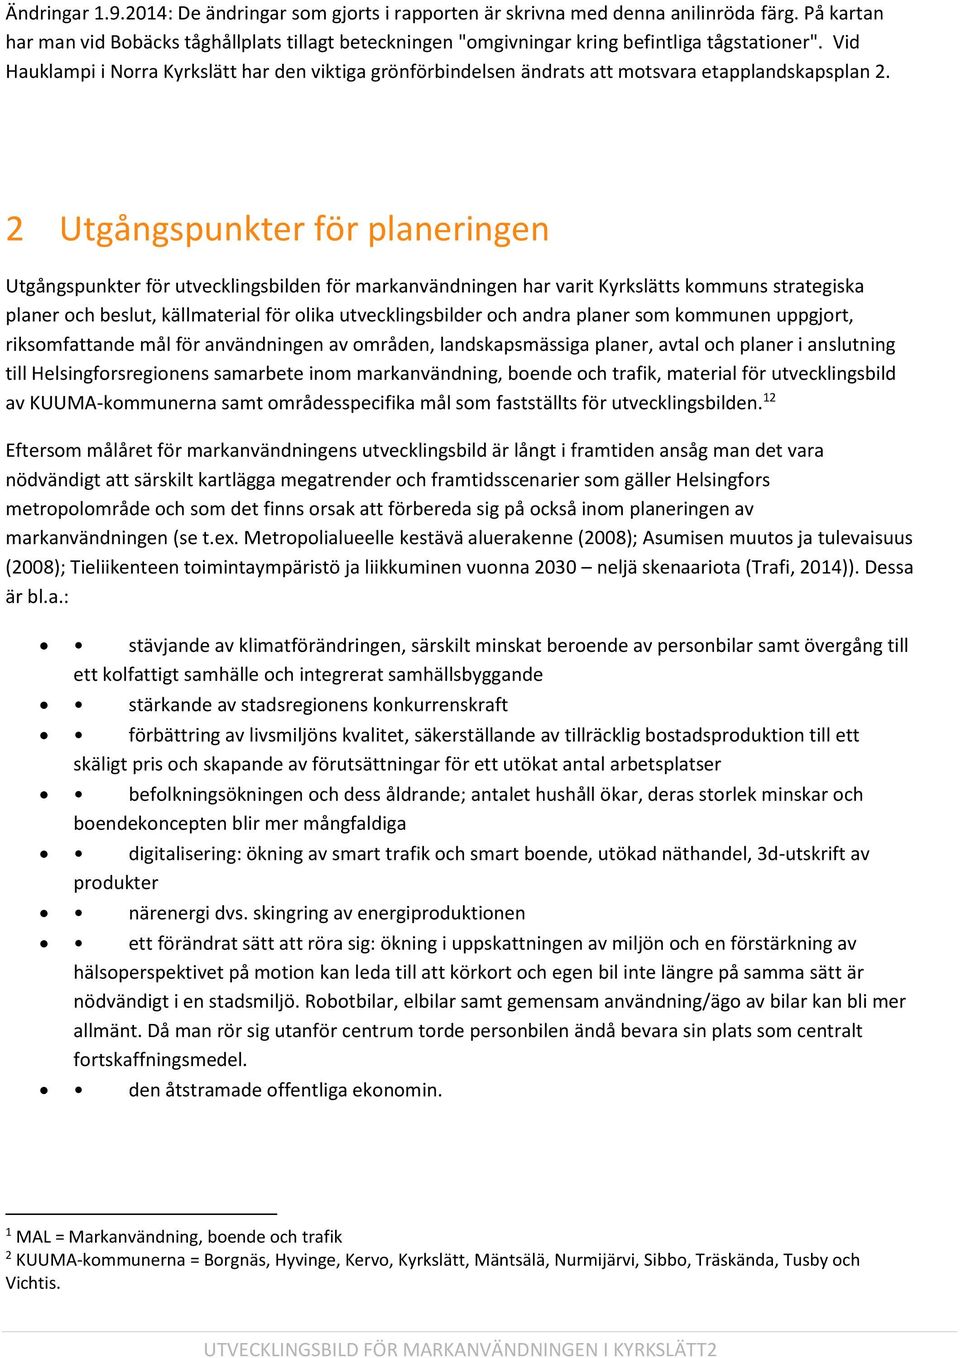 Vid Hauklampi i Norra Kyrkslätt har den viktiga grönförbindelsen ändrats att motsvara etapplandskapsplan 2.